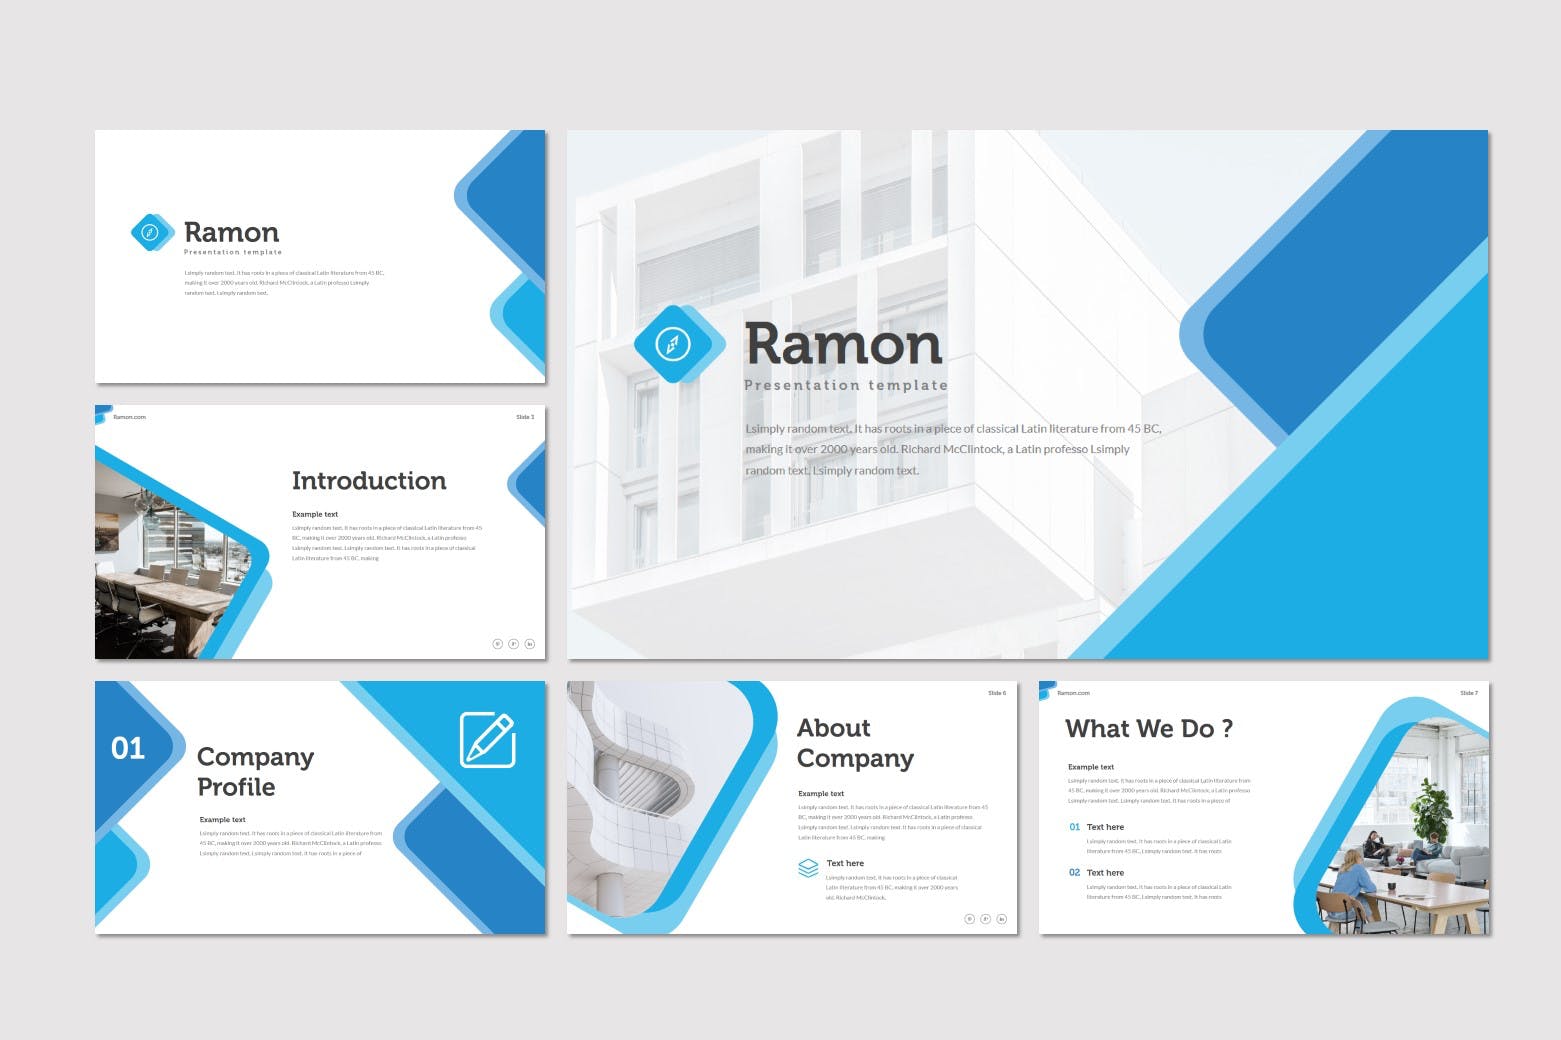 室内设计品牌宣传蚂蚁素材精选PPT模板 Ramon – Powerpoint Template插图(1)